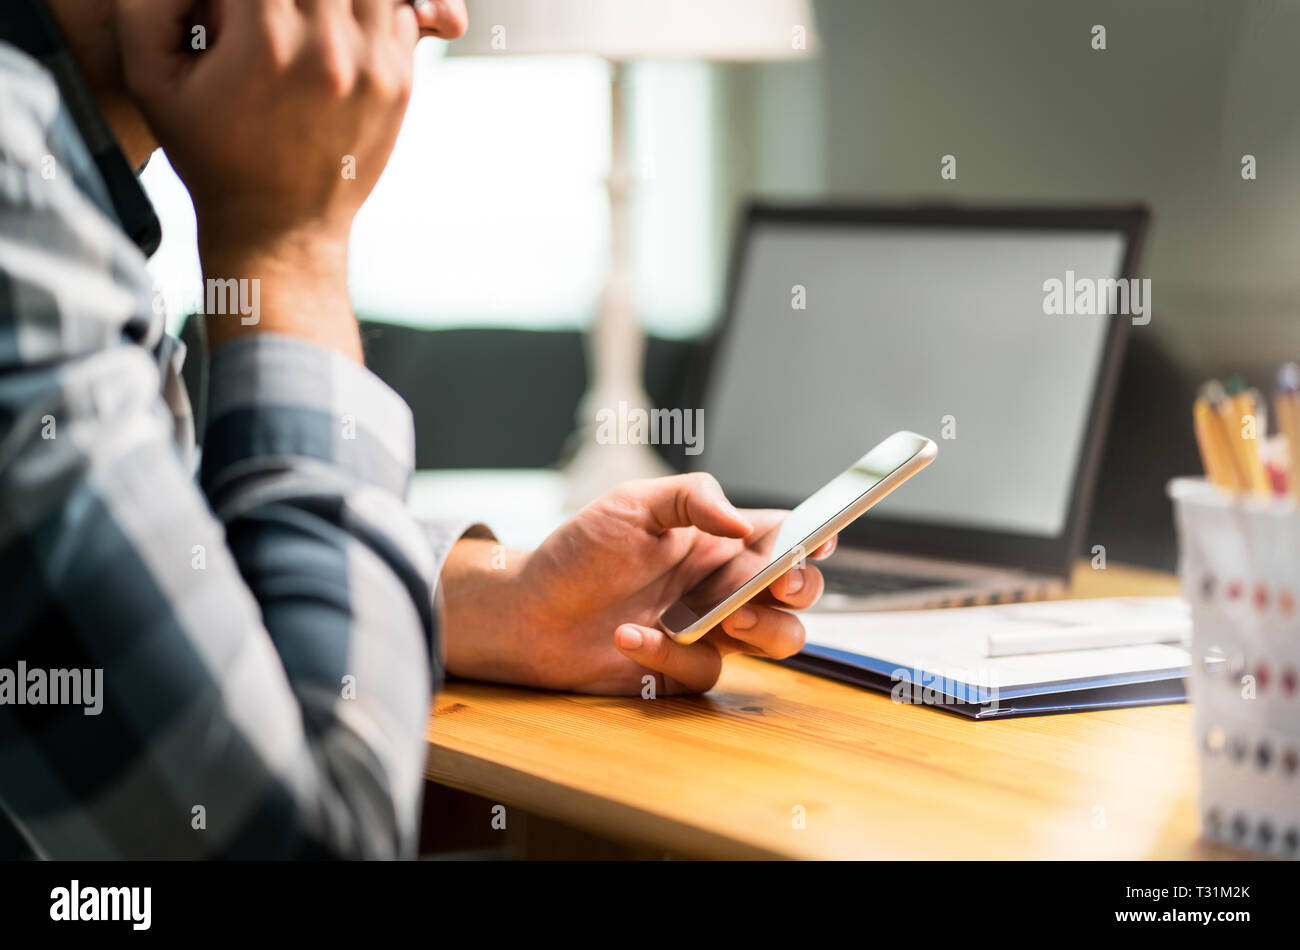 Lavoratore pigro usando il telefono in ufficio evitando il lavoro. Annoiato, triste o uomo infelice appoggiata contro la mano e la navigazione dei social media su Internet con lo smartphone. Foto Stock